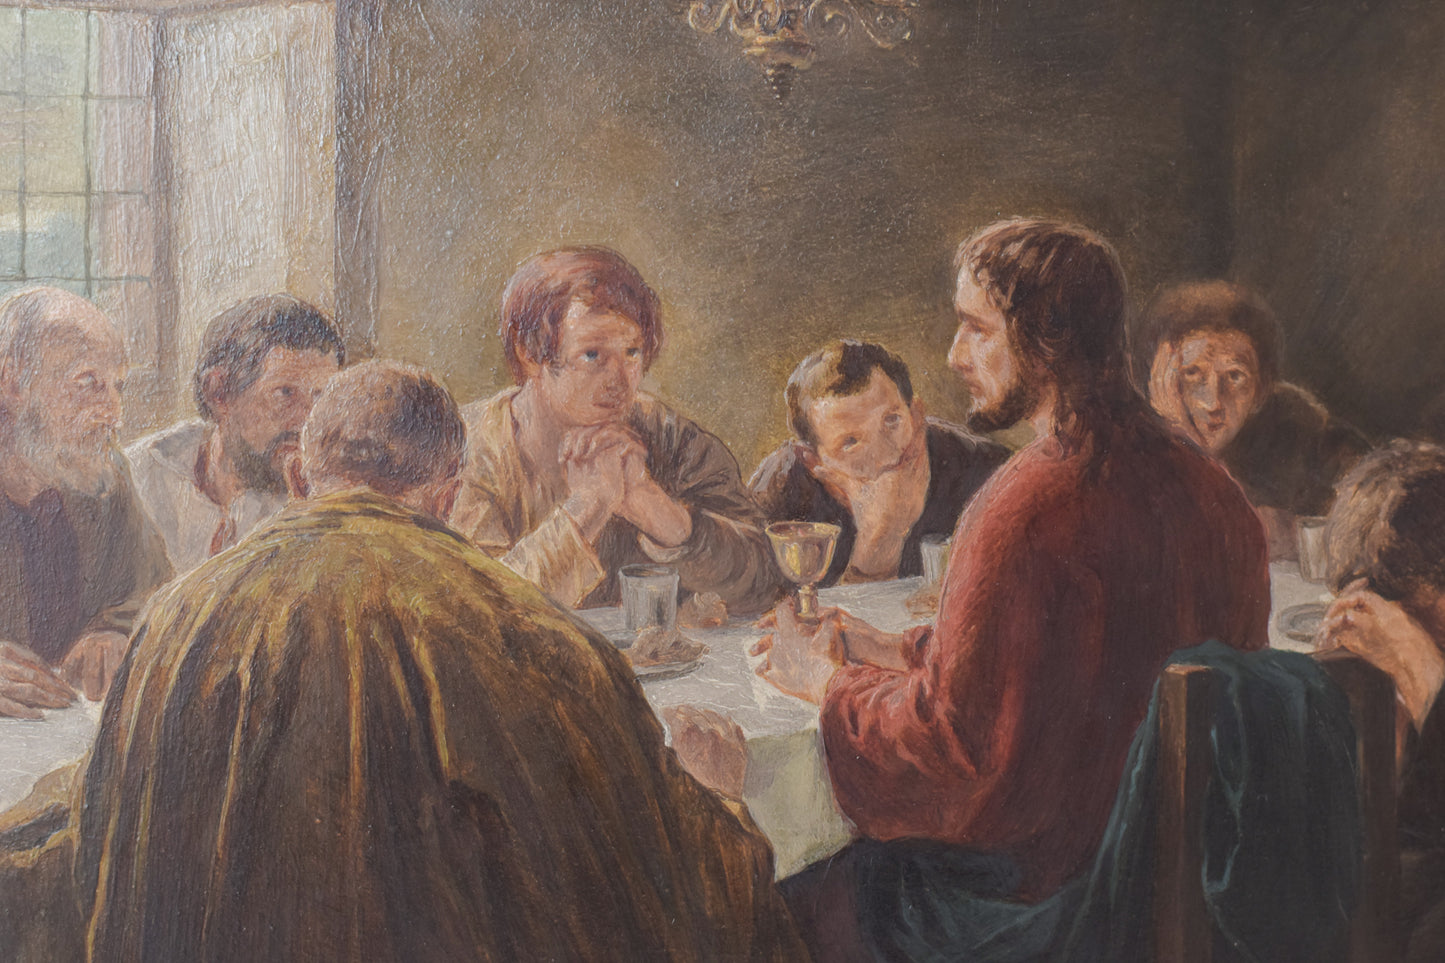 Last Supper - Oil on Panel